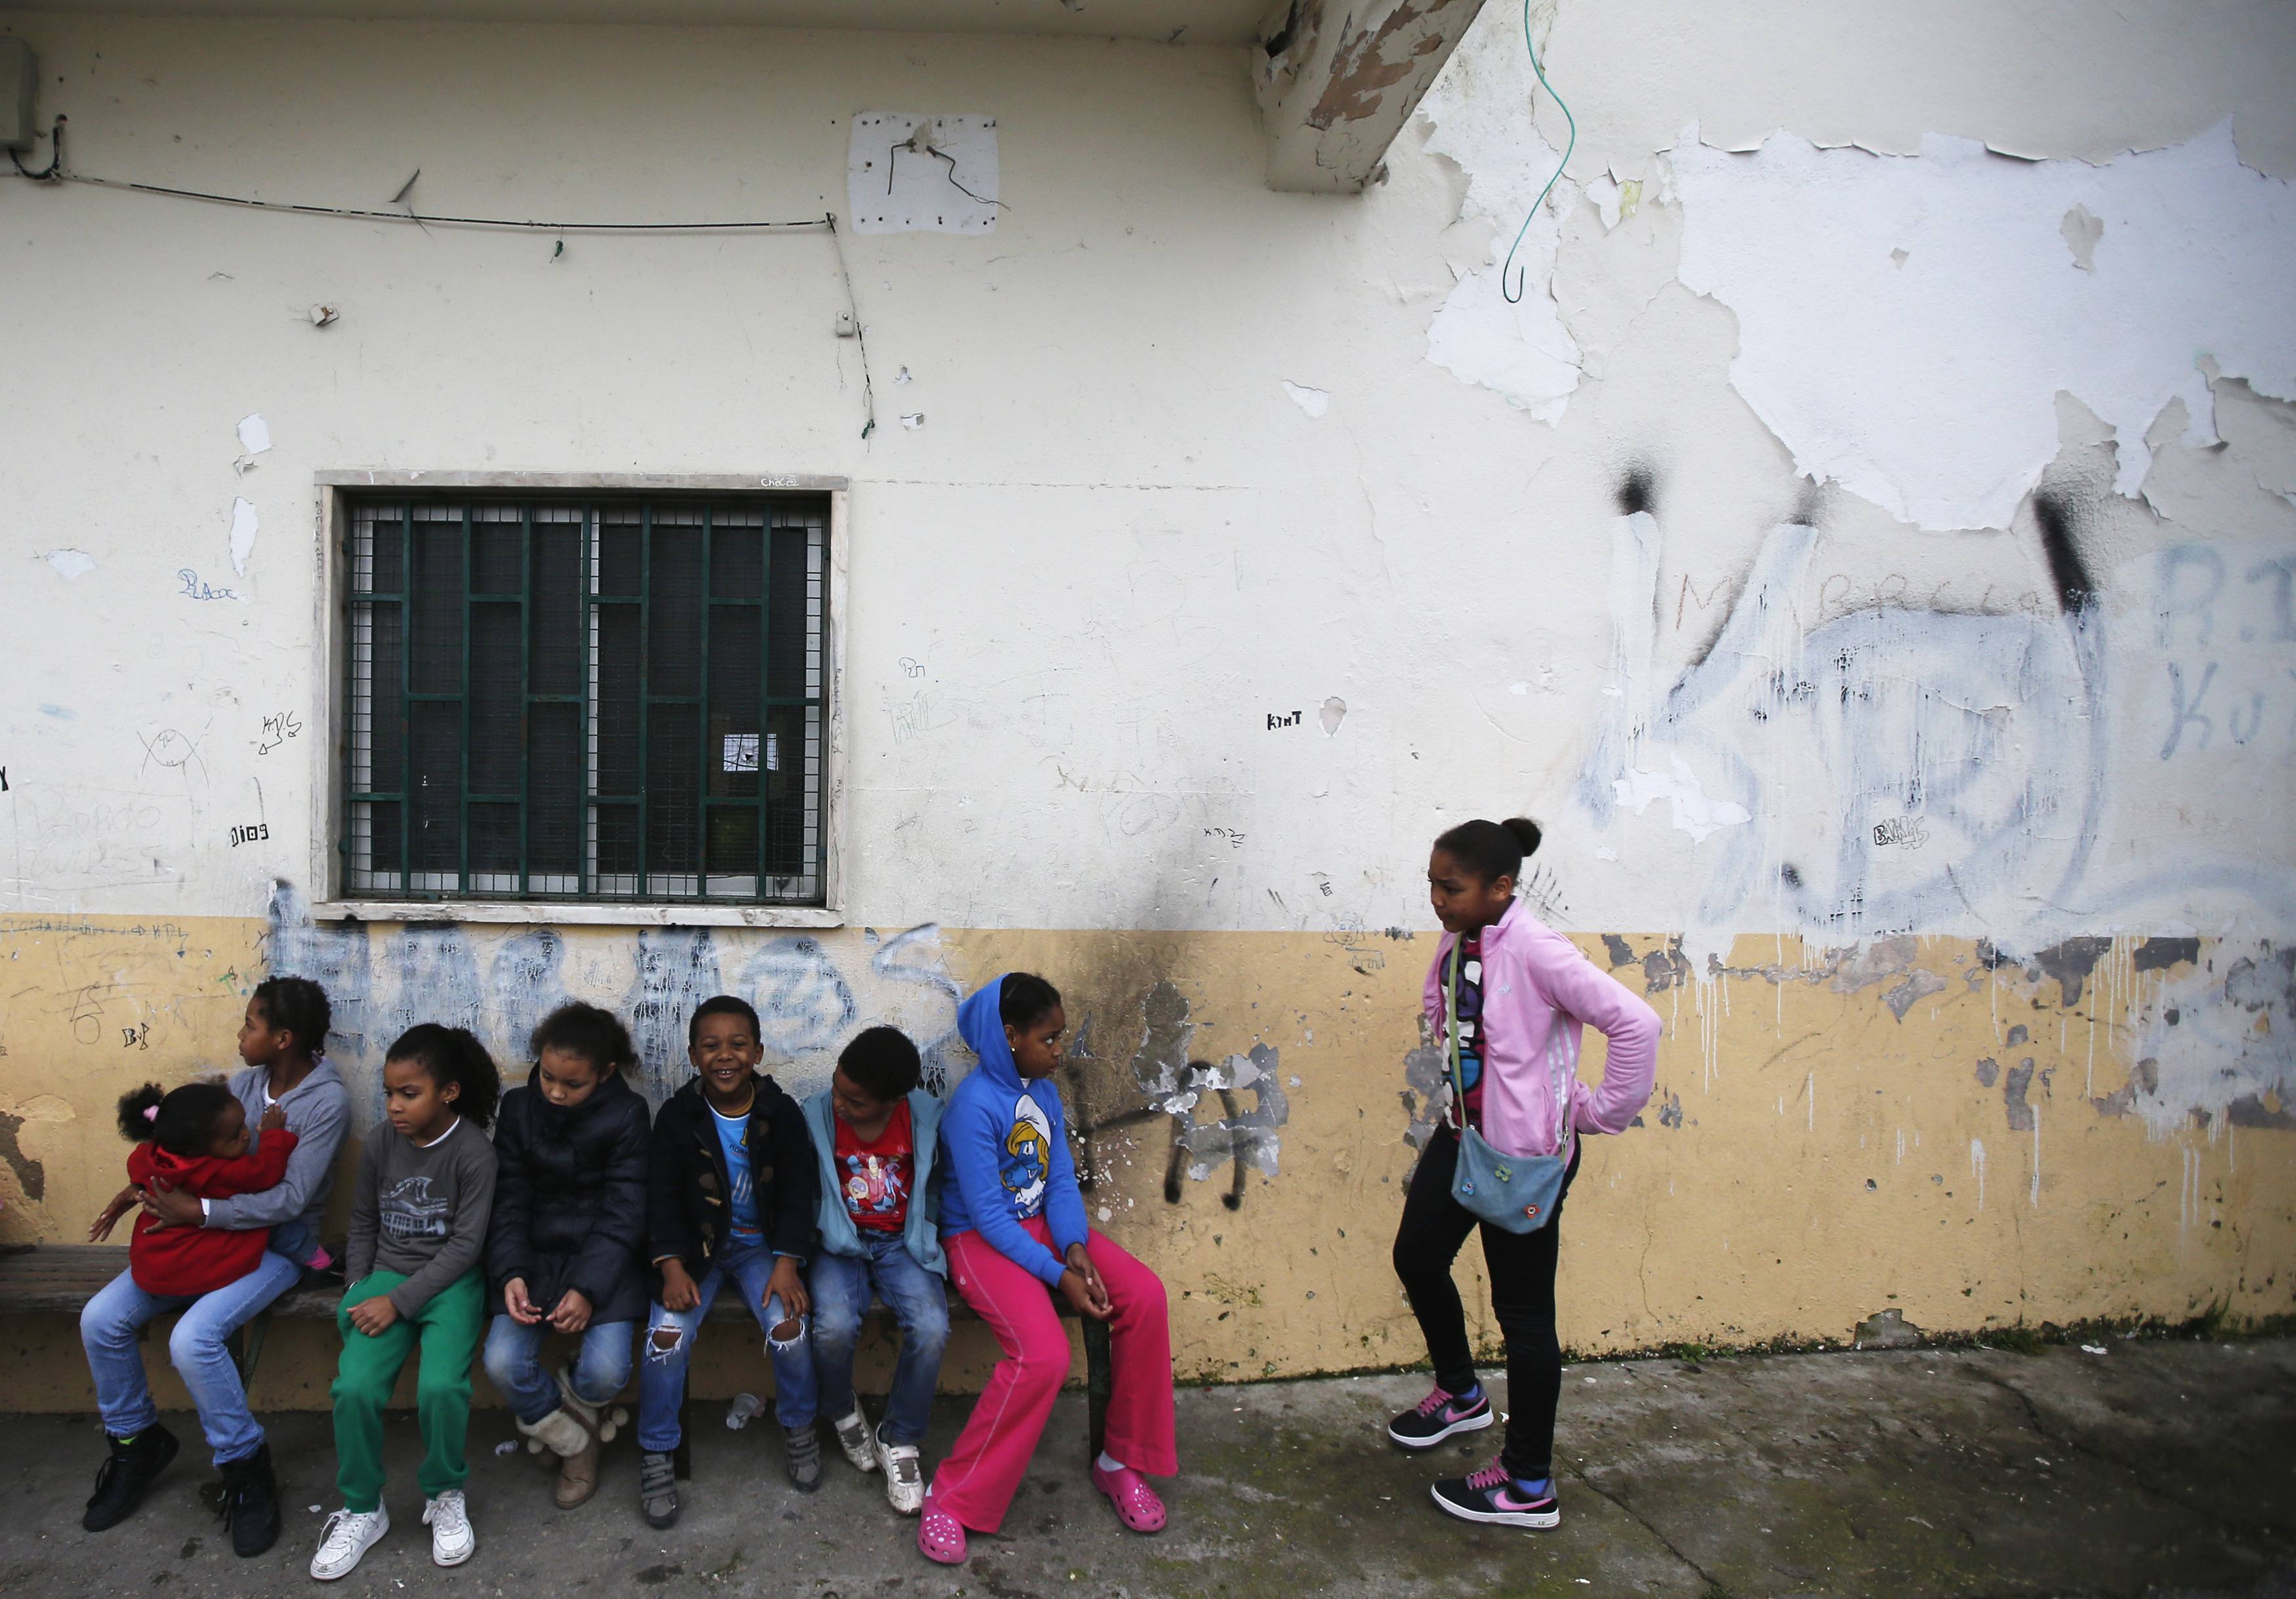 Πορτογαλία: Παιδιά πήγαιναν τα Χριστούγεννα για πρωινό στο κυλικείο του σχολείου τους γιατί δεν είχαν να φάνε!